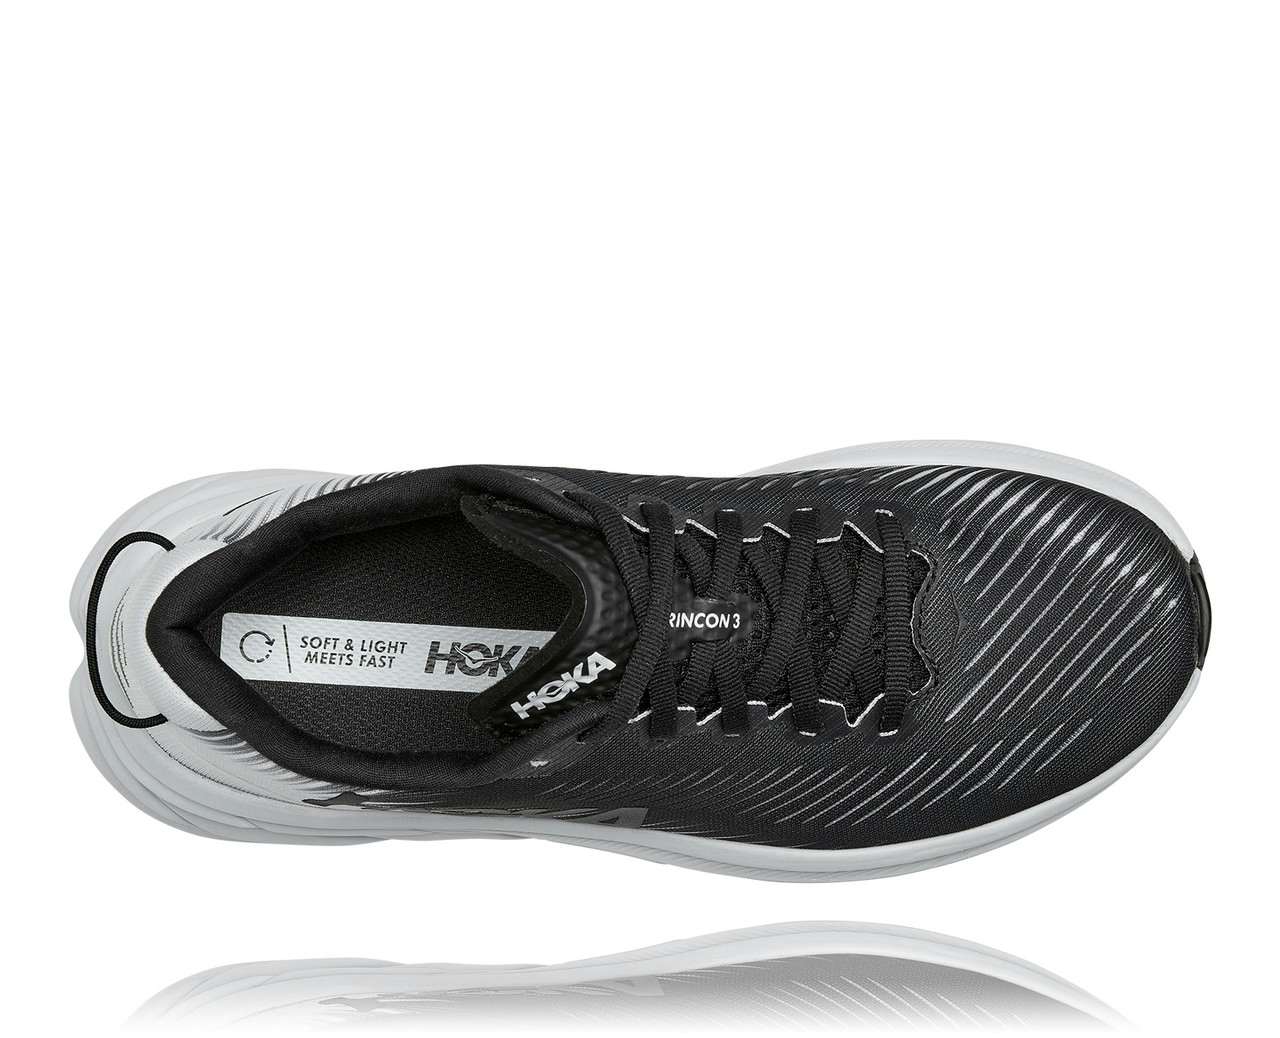 Chaussures de course sur route Rincon 3 Noir/Blanc